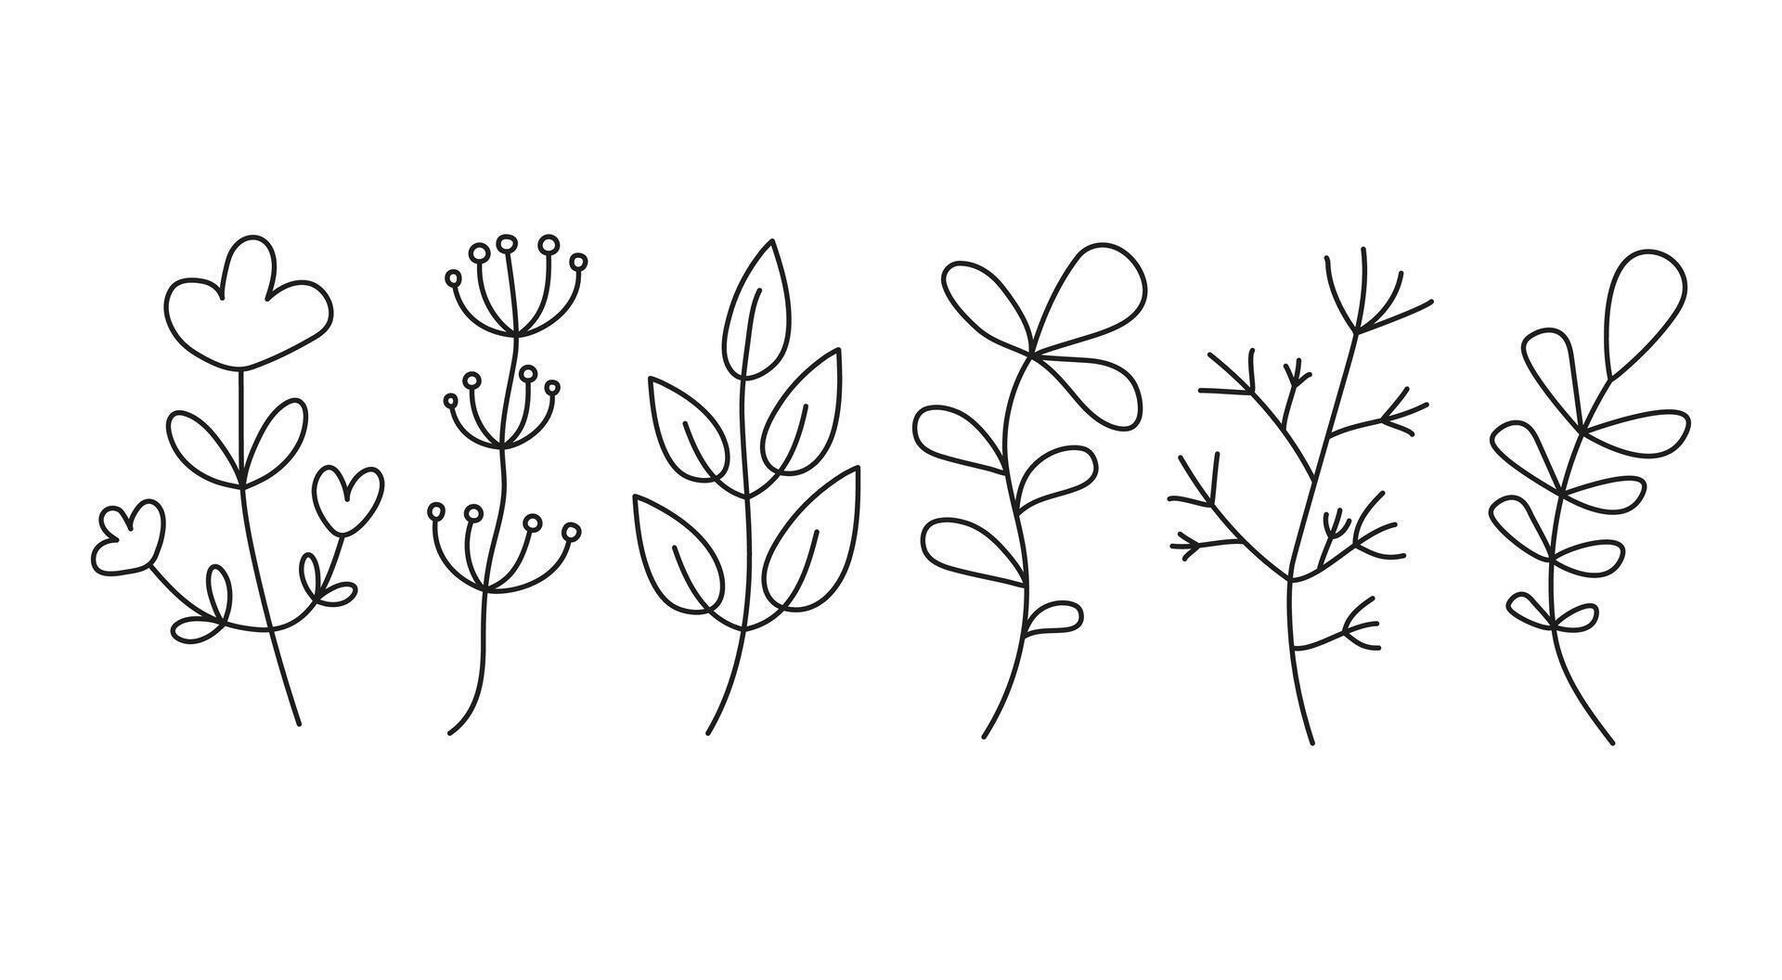 grama, plantar. flor, folha. abstrato flores rabisco, esboço, simples desenhos, linear ícones. vetor